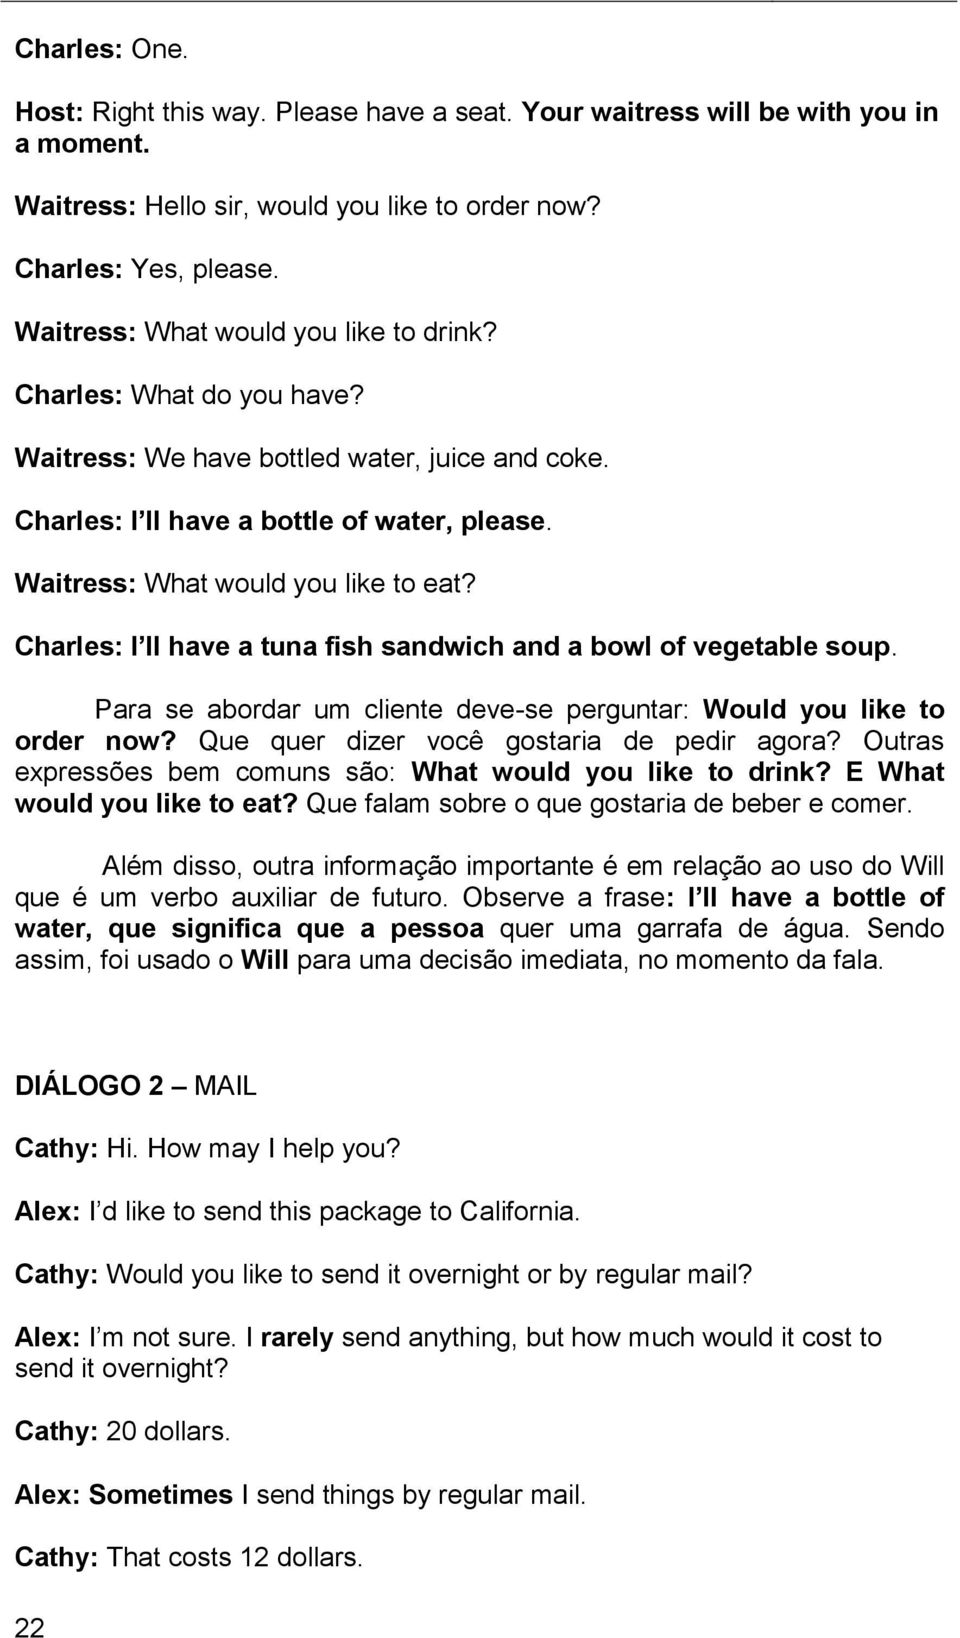 Charles: I ll have a tuna fish sandwich and a bowl of vegetable soup. Para se abordar um cliente deve-se perguntar: Would you like to order now? Que quer dizer você gostaria de pedir agora?